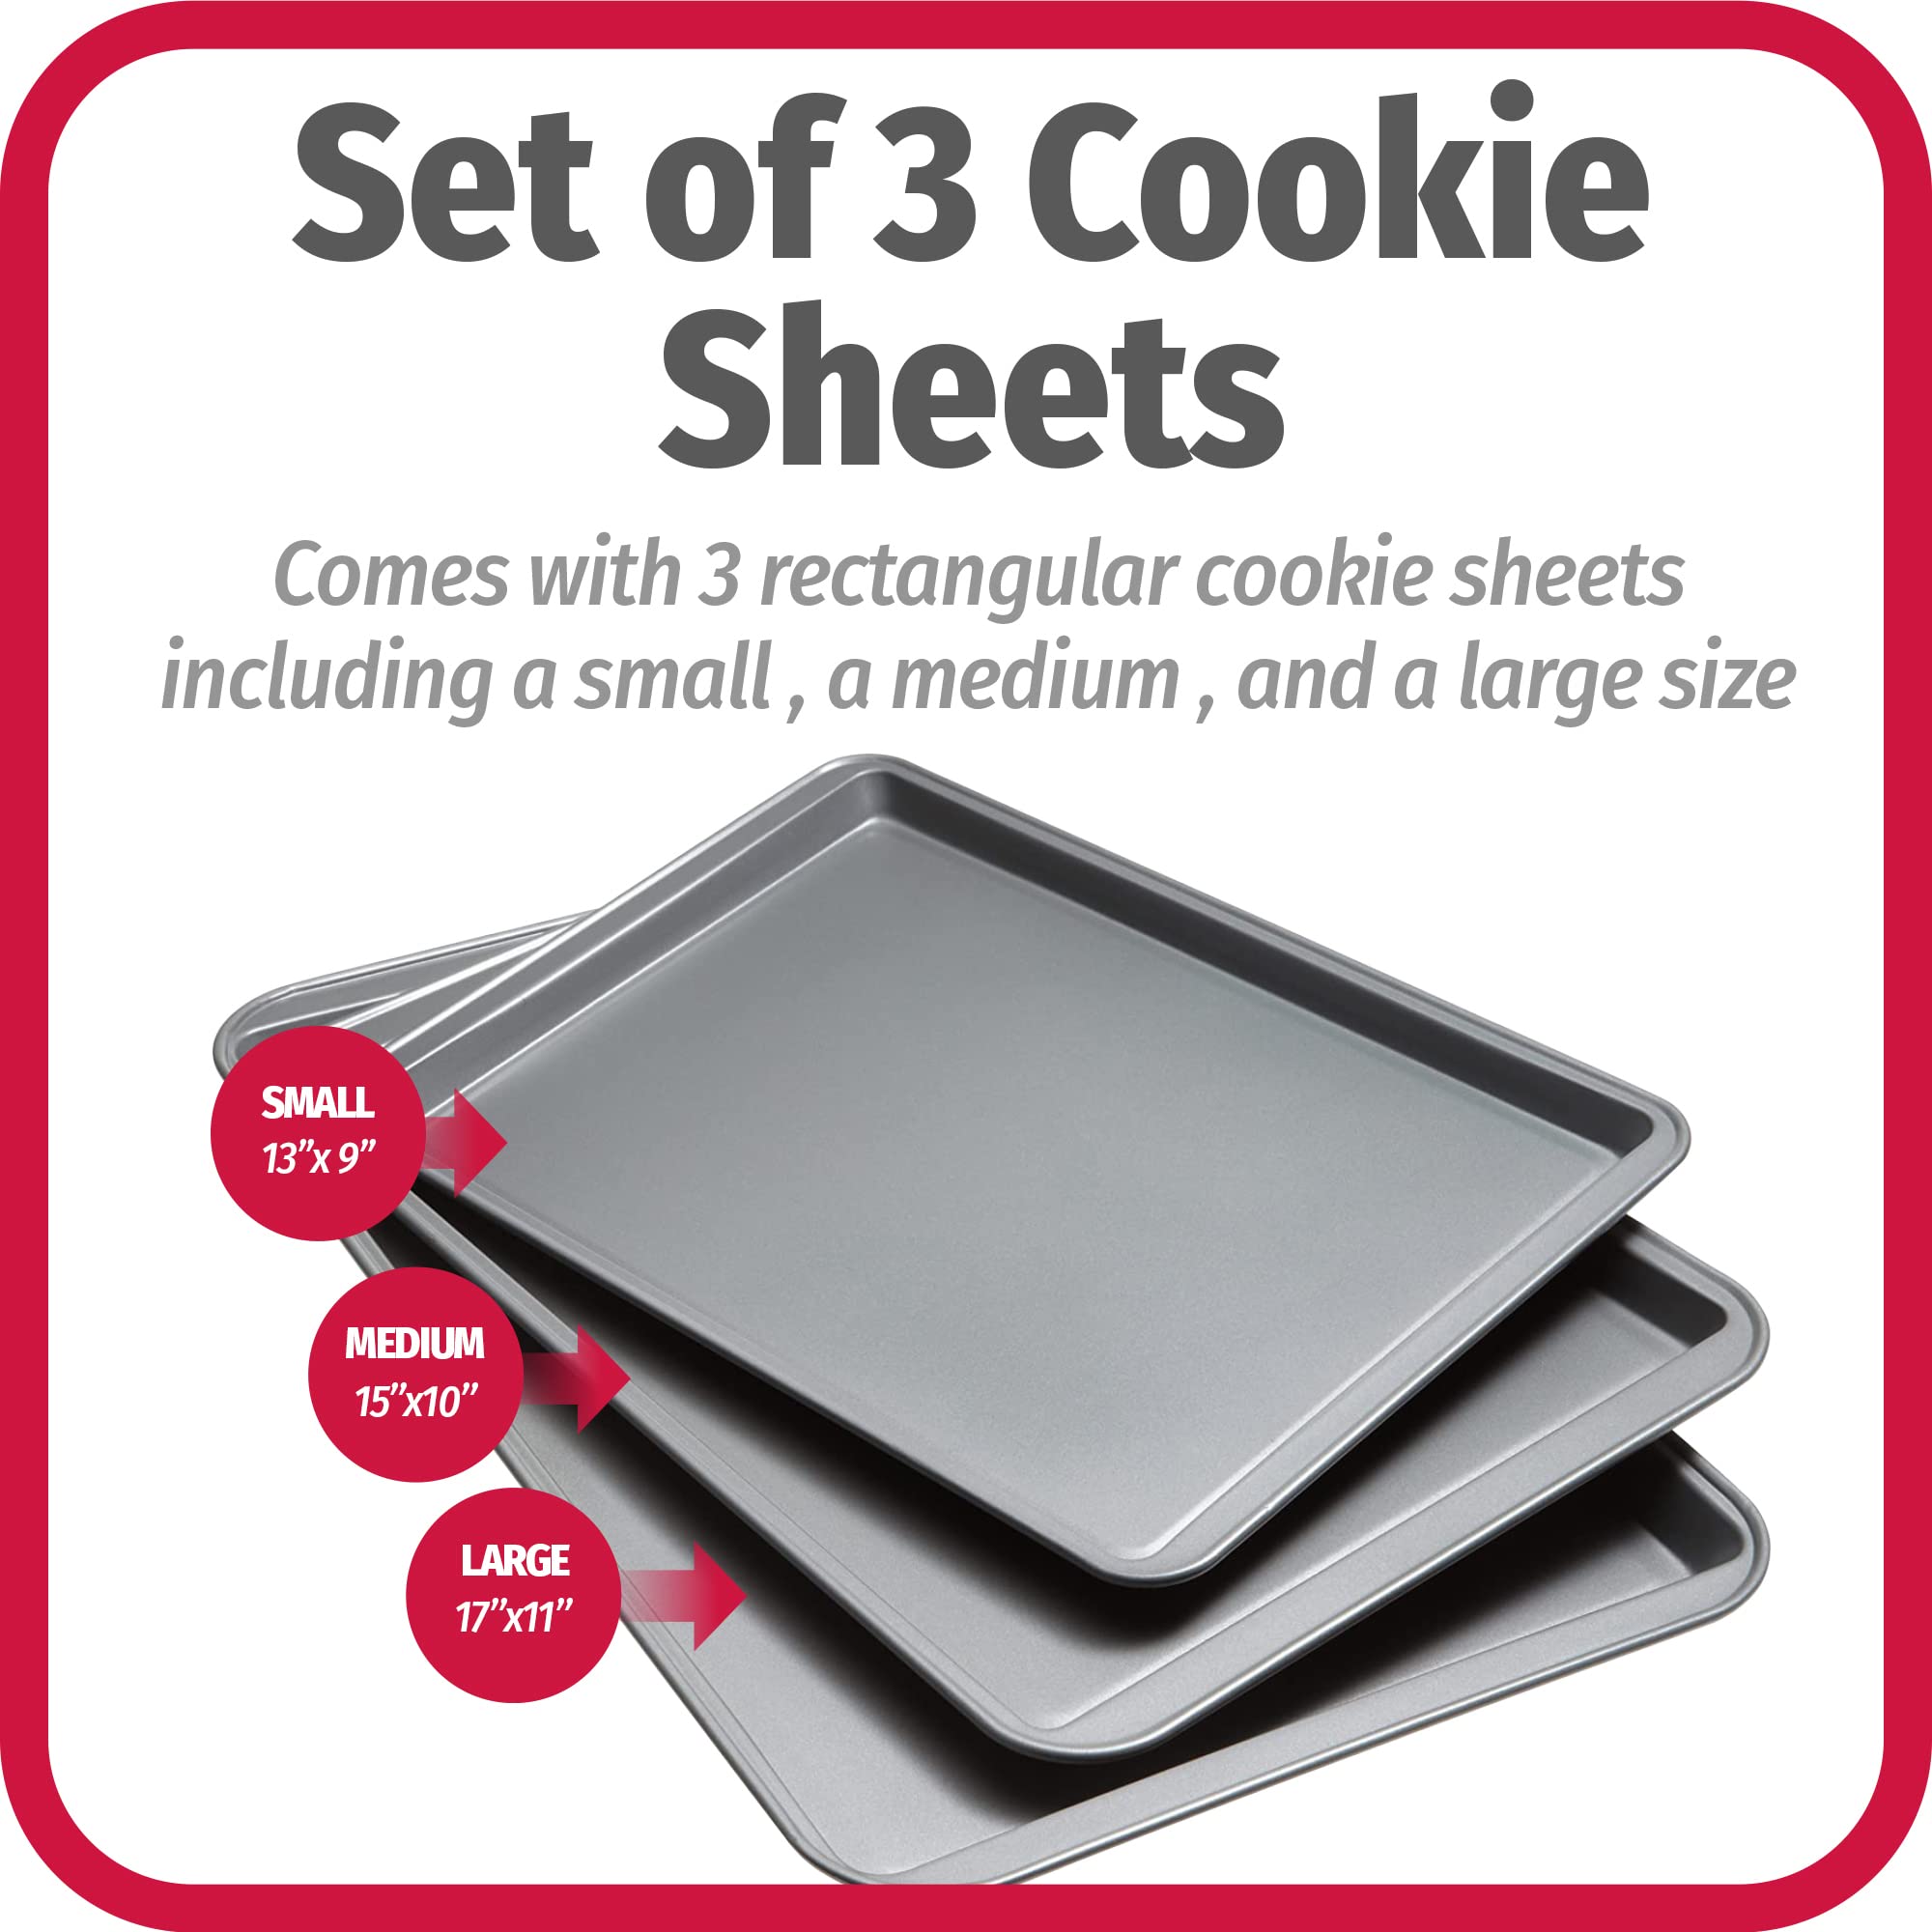 Goodcook Nonstick Steel 3-Piece Cookie Sheet Set